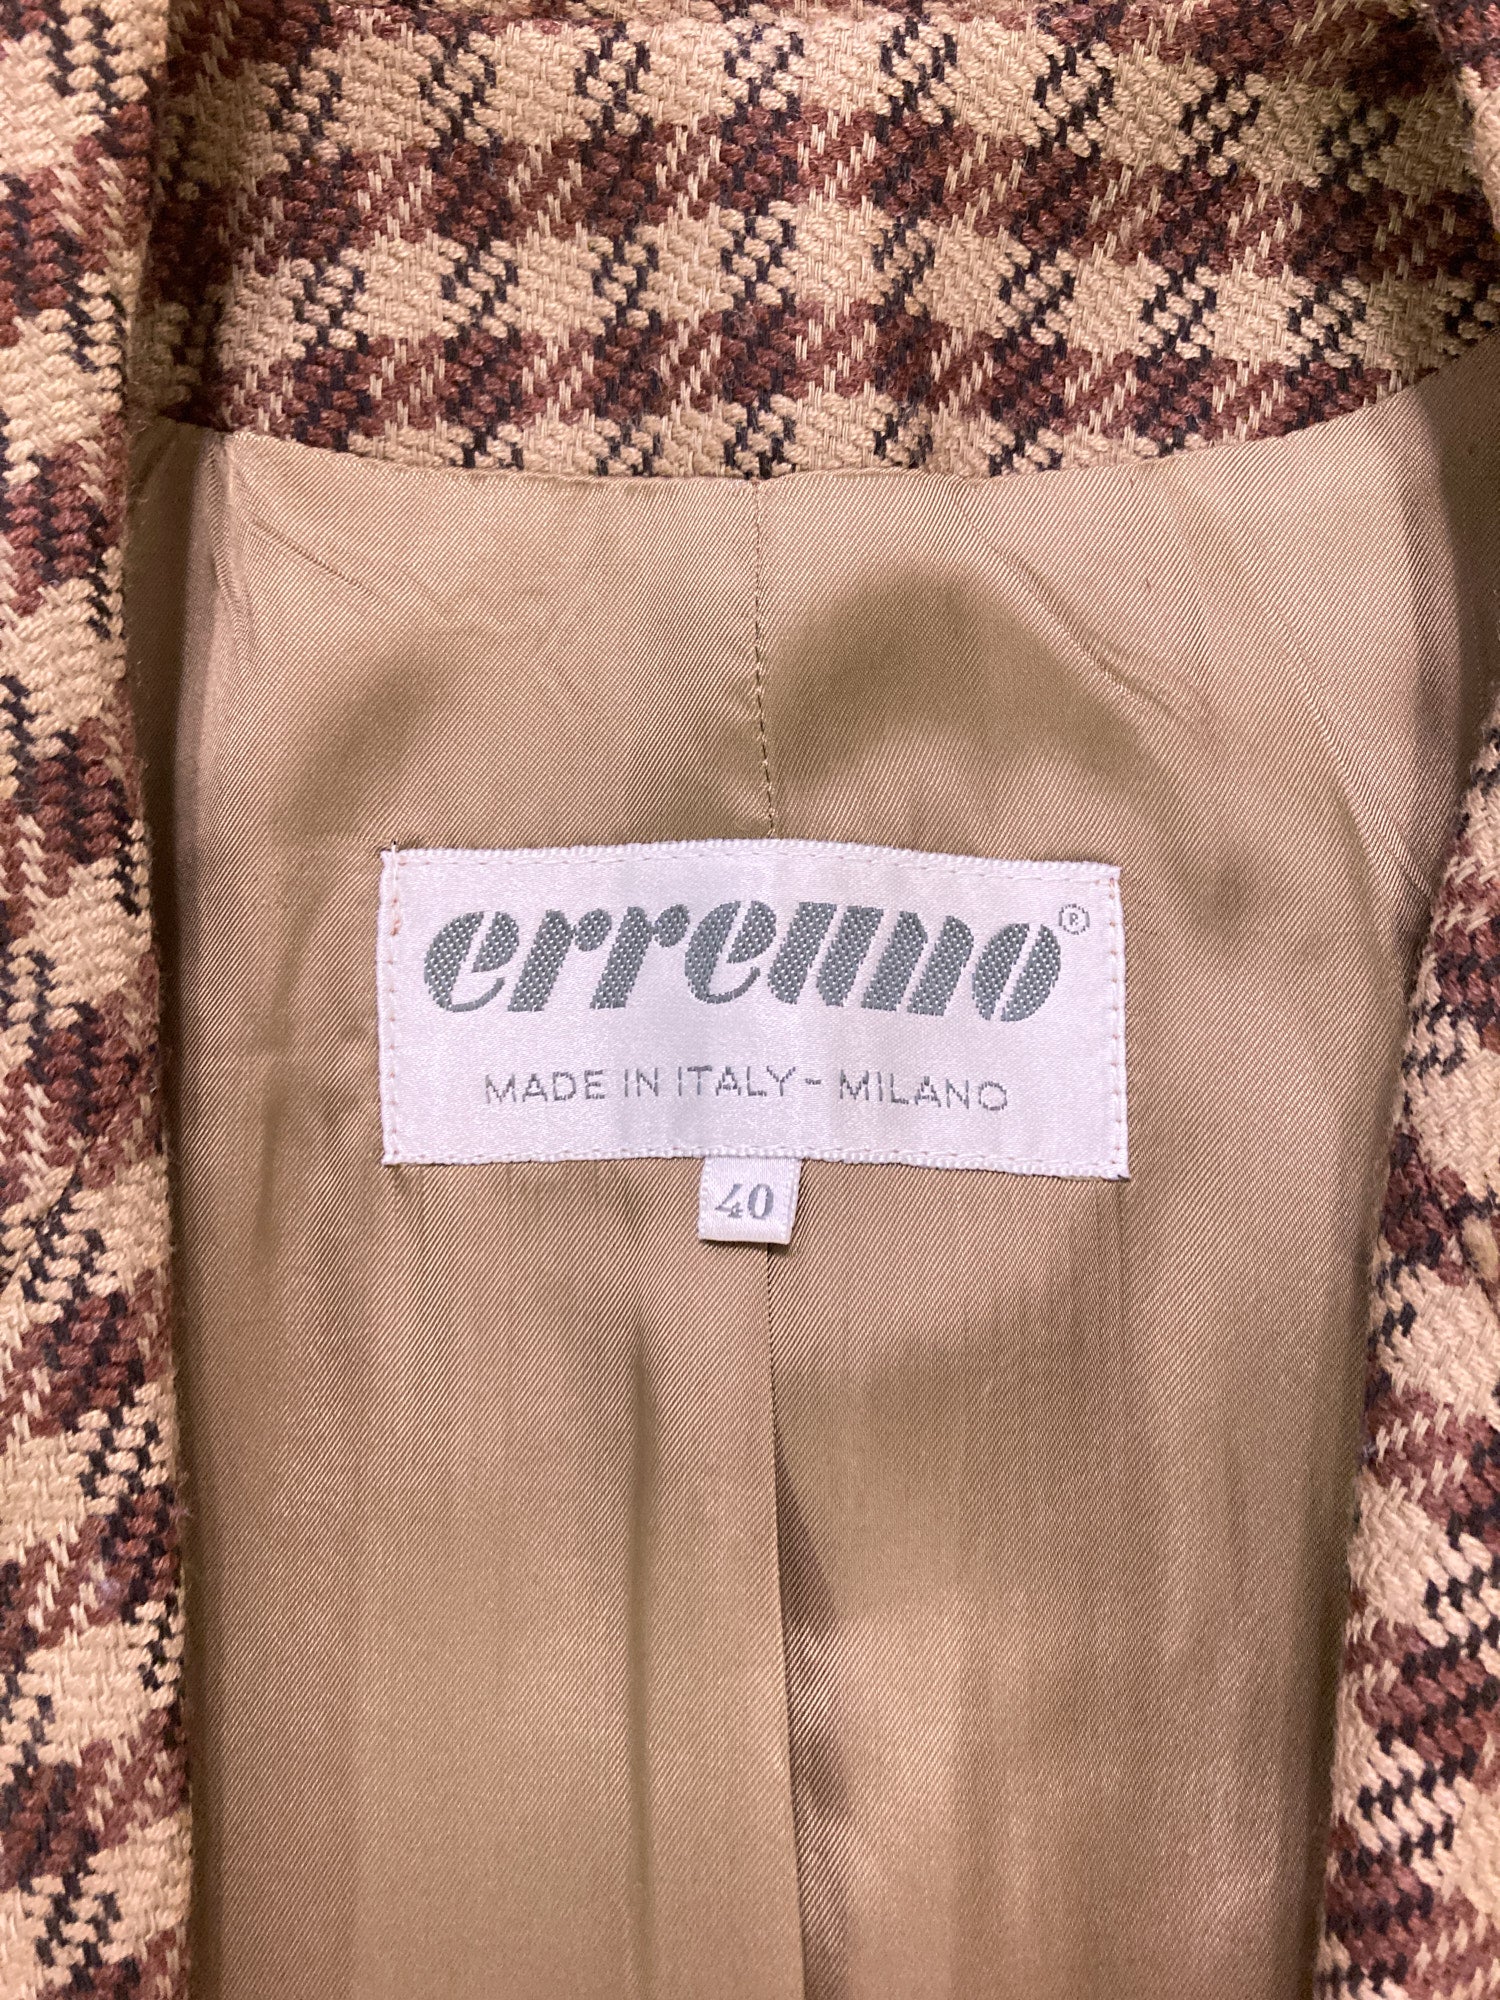 Erreuno (Giorgio Armani) 1980s brown wool check one button blazer - size 40